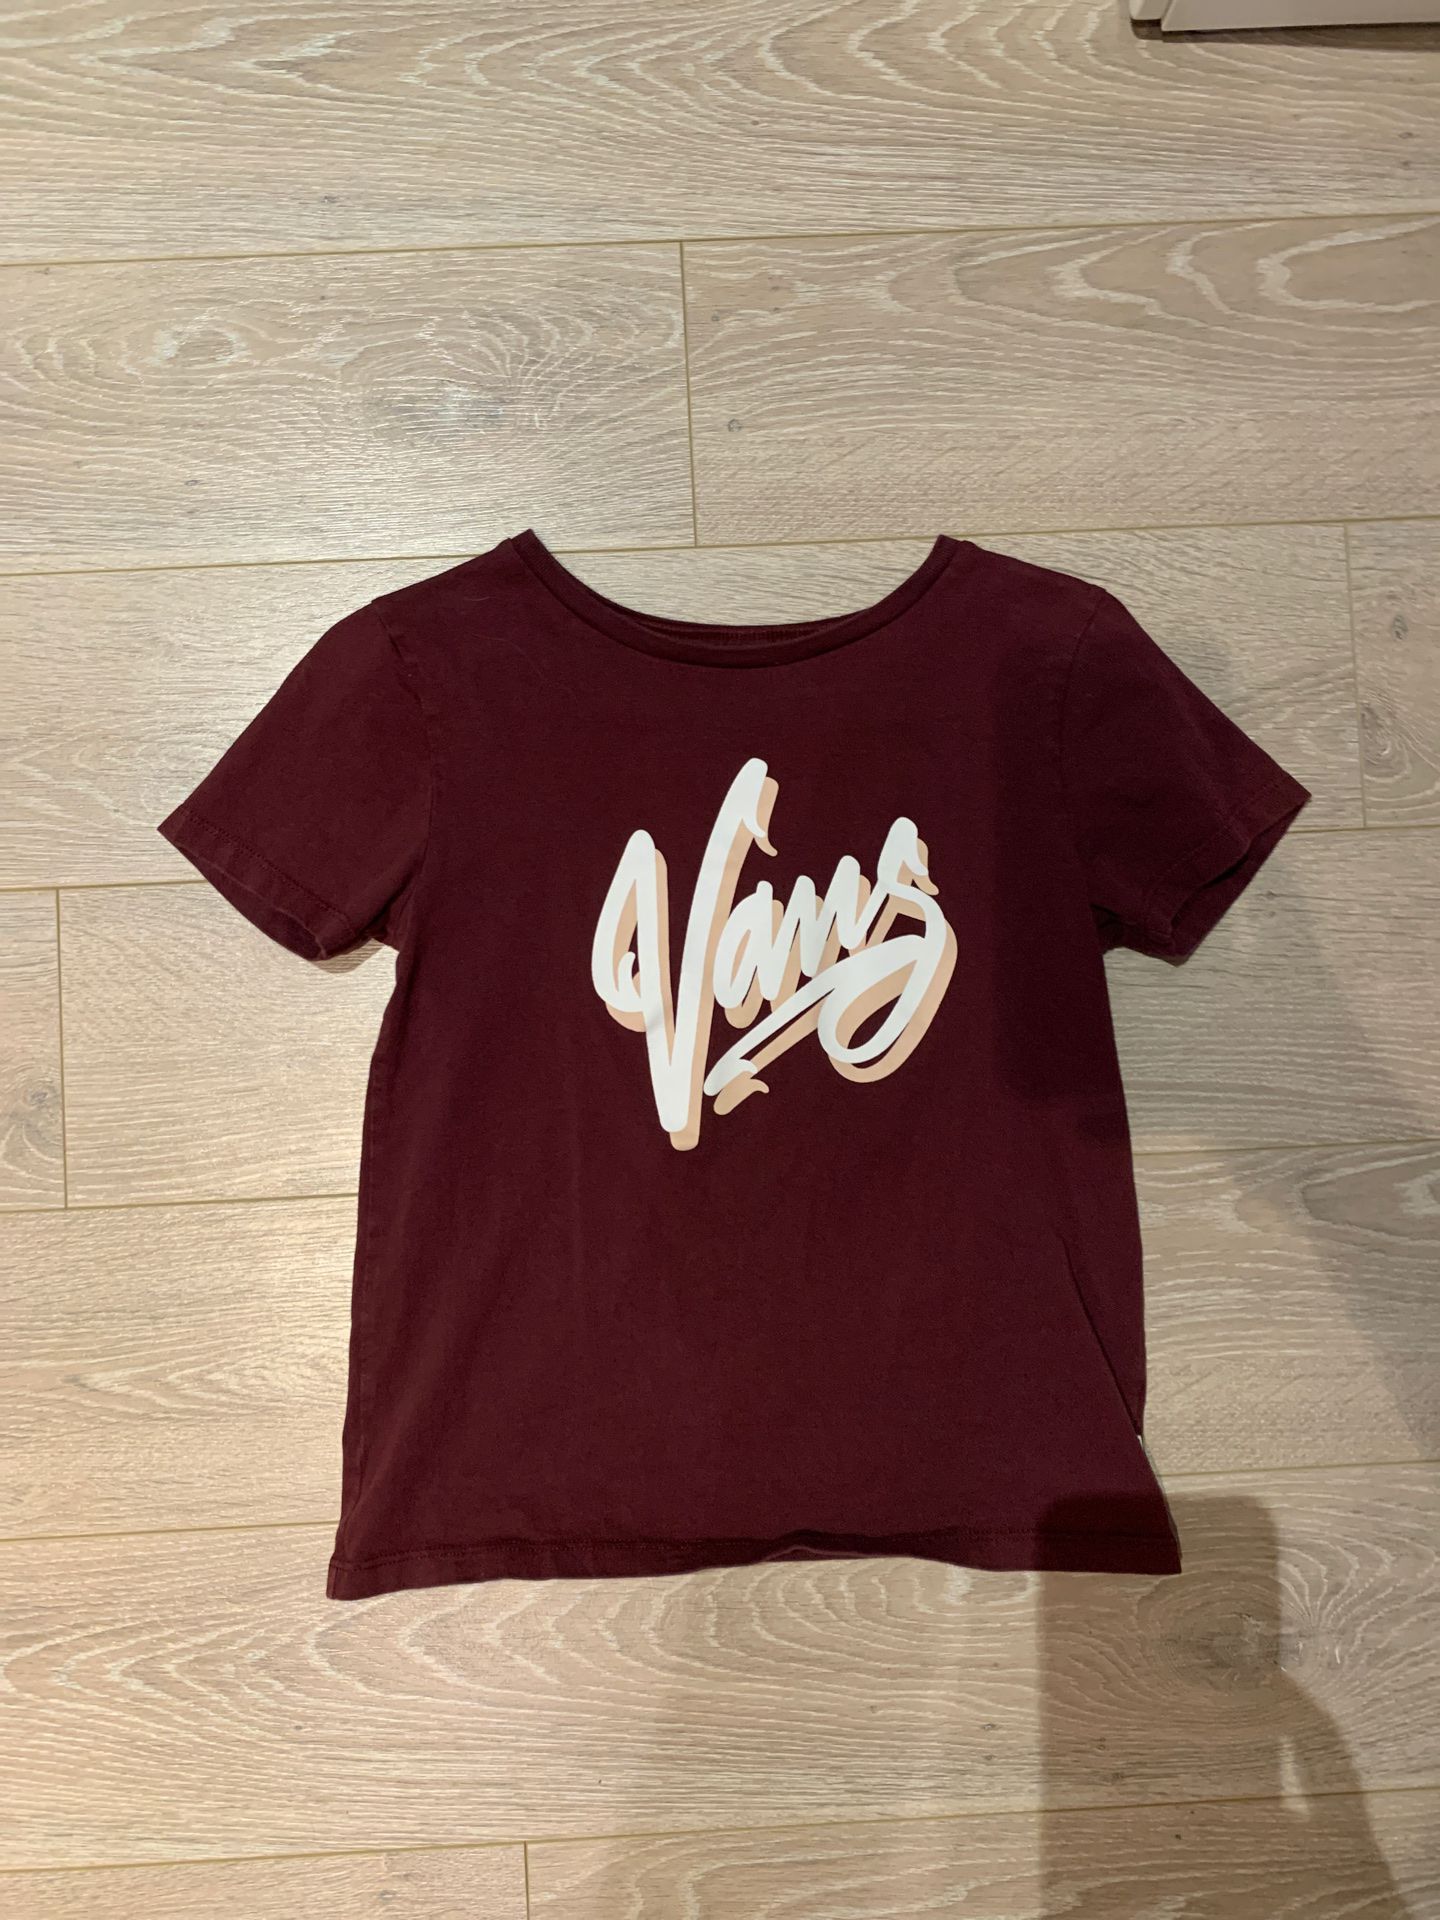 Women’s Vans shirt